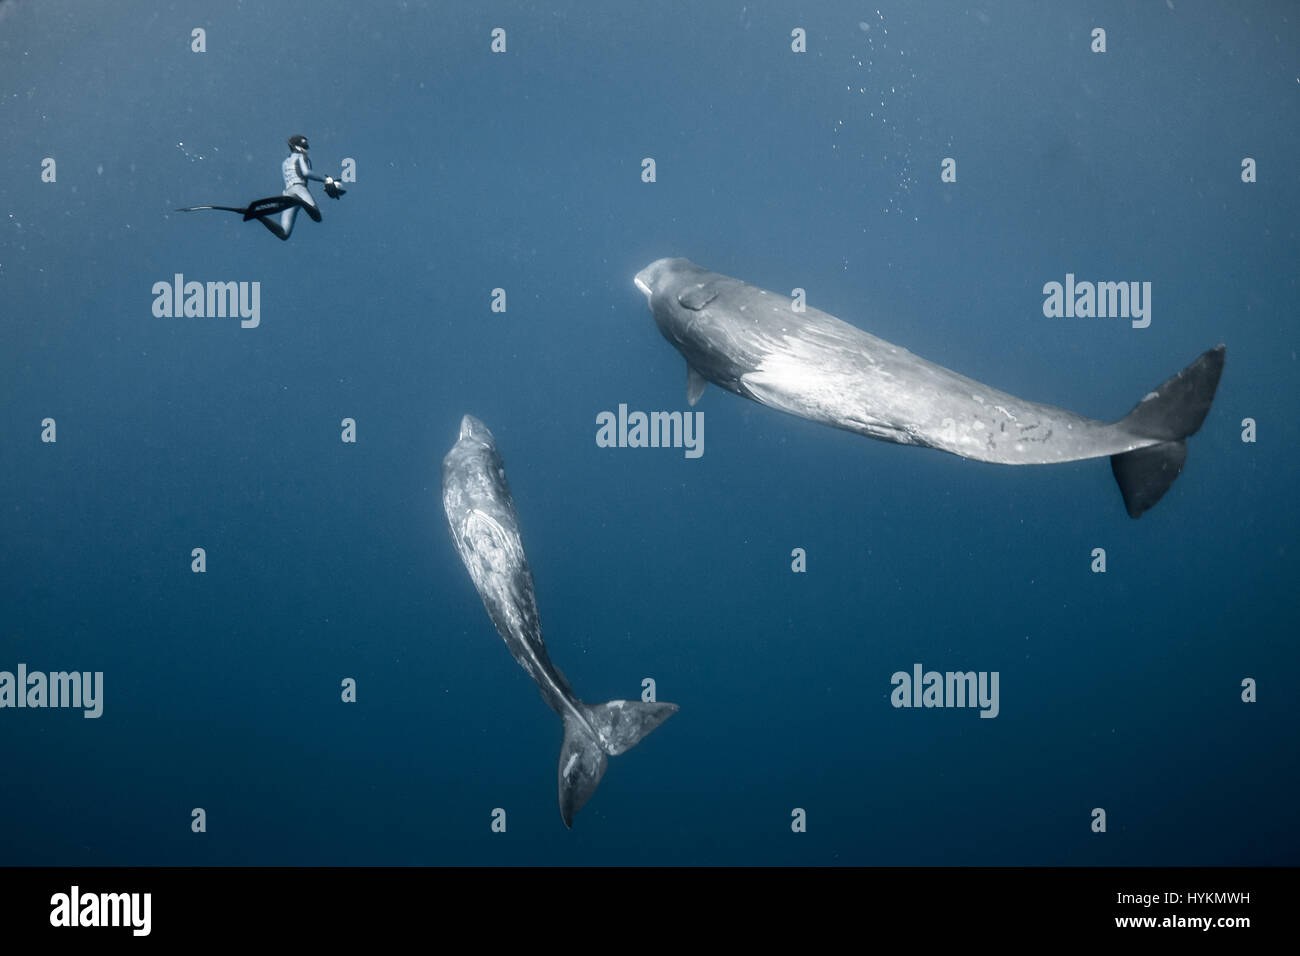 CAPTIVIATING fotografie di un libero nuoto subacqueo in perfetta sintonia con i capodogli sono stati splendidamente catturata da un intrepido coppia di fotografi dilettanti. Come se un membro accettato della balena pod, i fortunati diver - che in assenza di attrezzature subacquee devono tenere il suo soffio e immersione fino a 60-piedi subacquea - riesce ancora a corrisponde alle posizioni delle balene a sapientemente creare una visione di nuoto sincronizzato alla perfezione. Altre foto mostrano riprese ravvicinate del mare-giganti dove i subacquei sono stati all'interno di toccare la distanza delle balene, nonché immagini mostrando loro in tutta la loro gloria. Francese Foto Stock